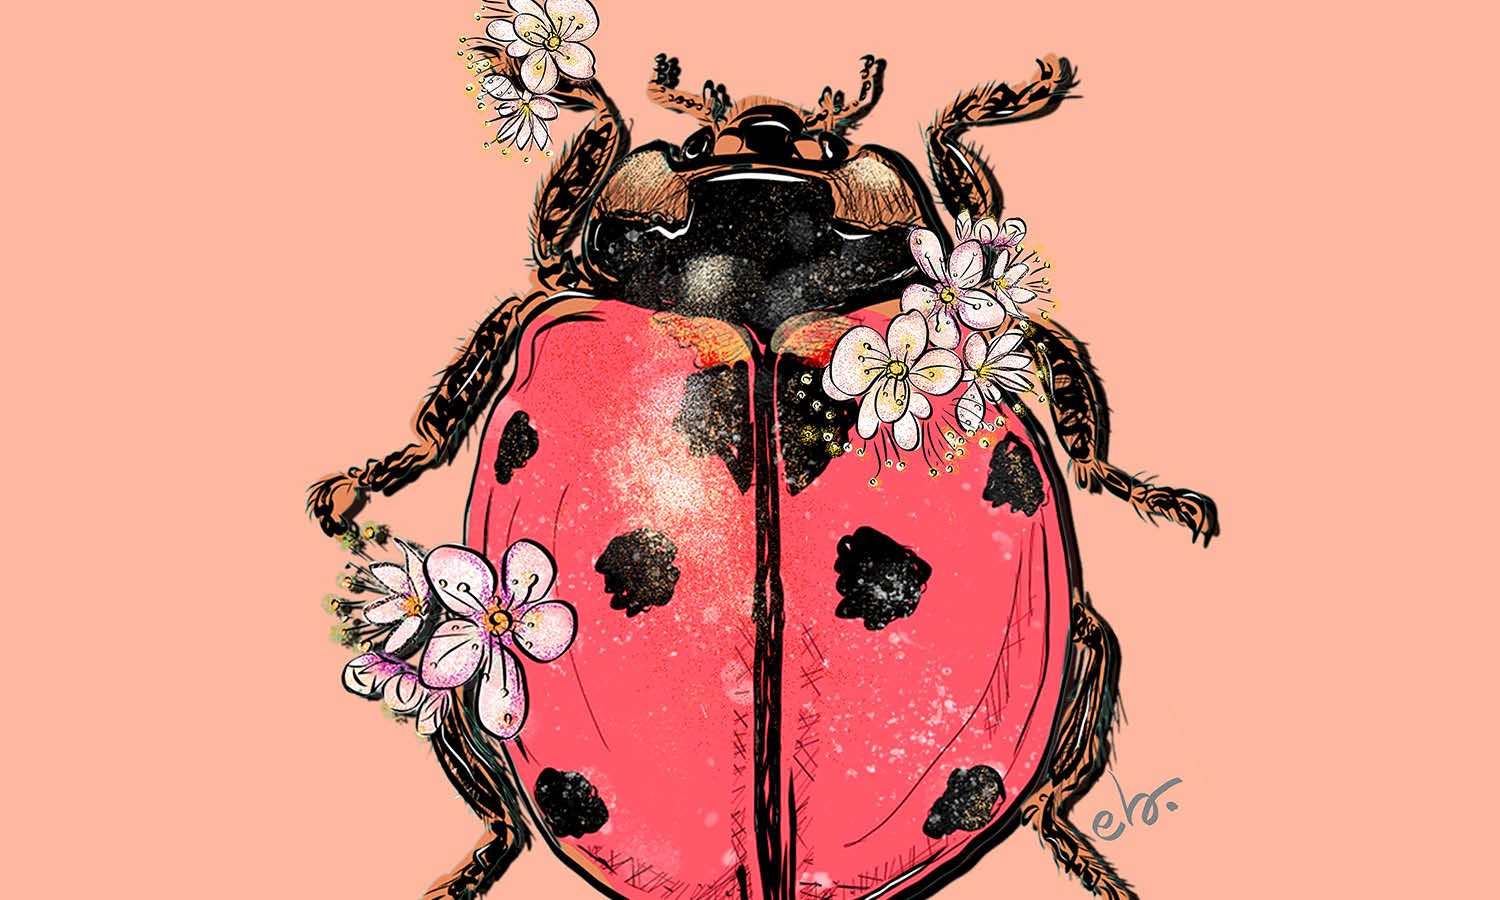 30 Best Ladybug Illustration Ideas You Should Check